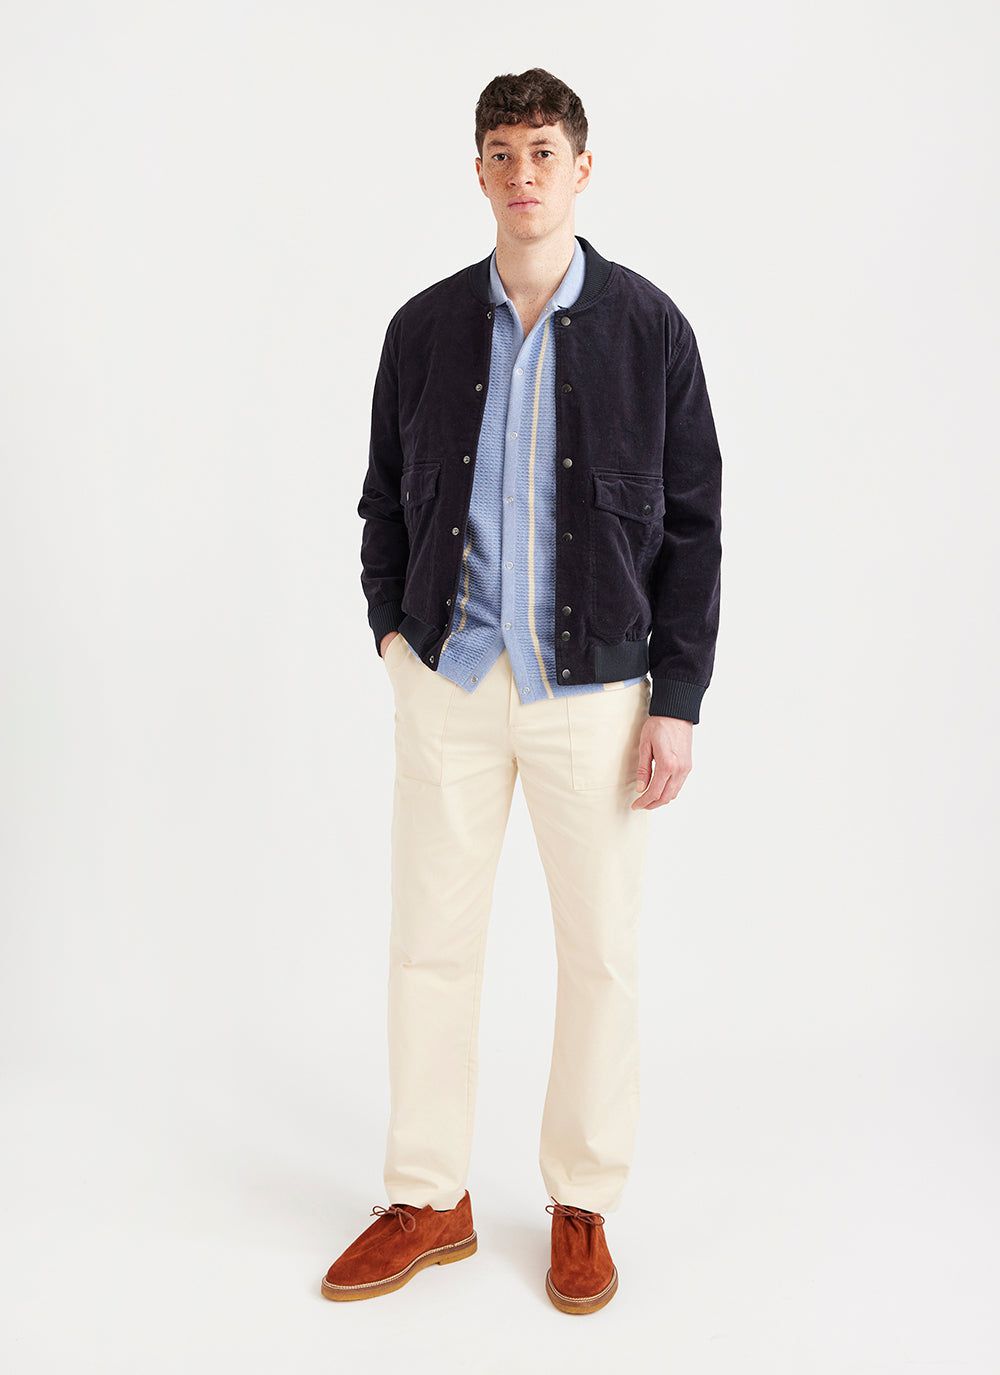 Men's Short Sleeve Knitted Shirt | Adaman Breeze | Blue & Percival Menswear